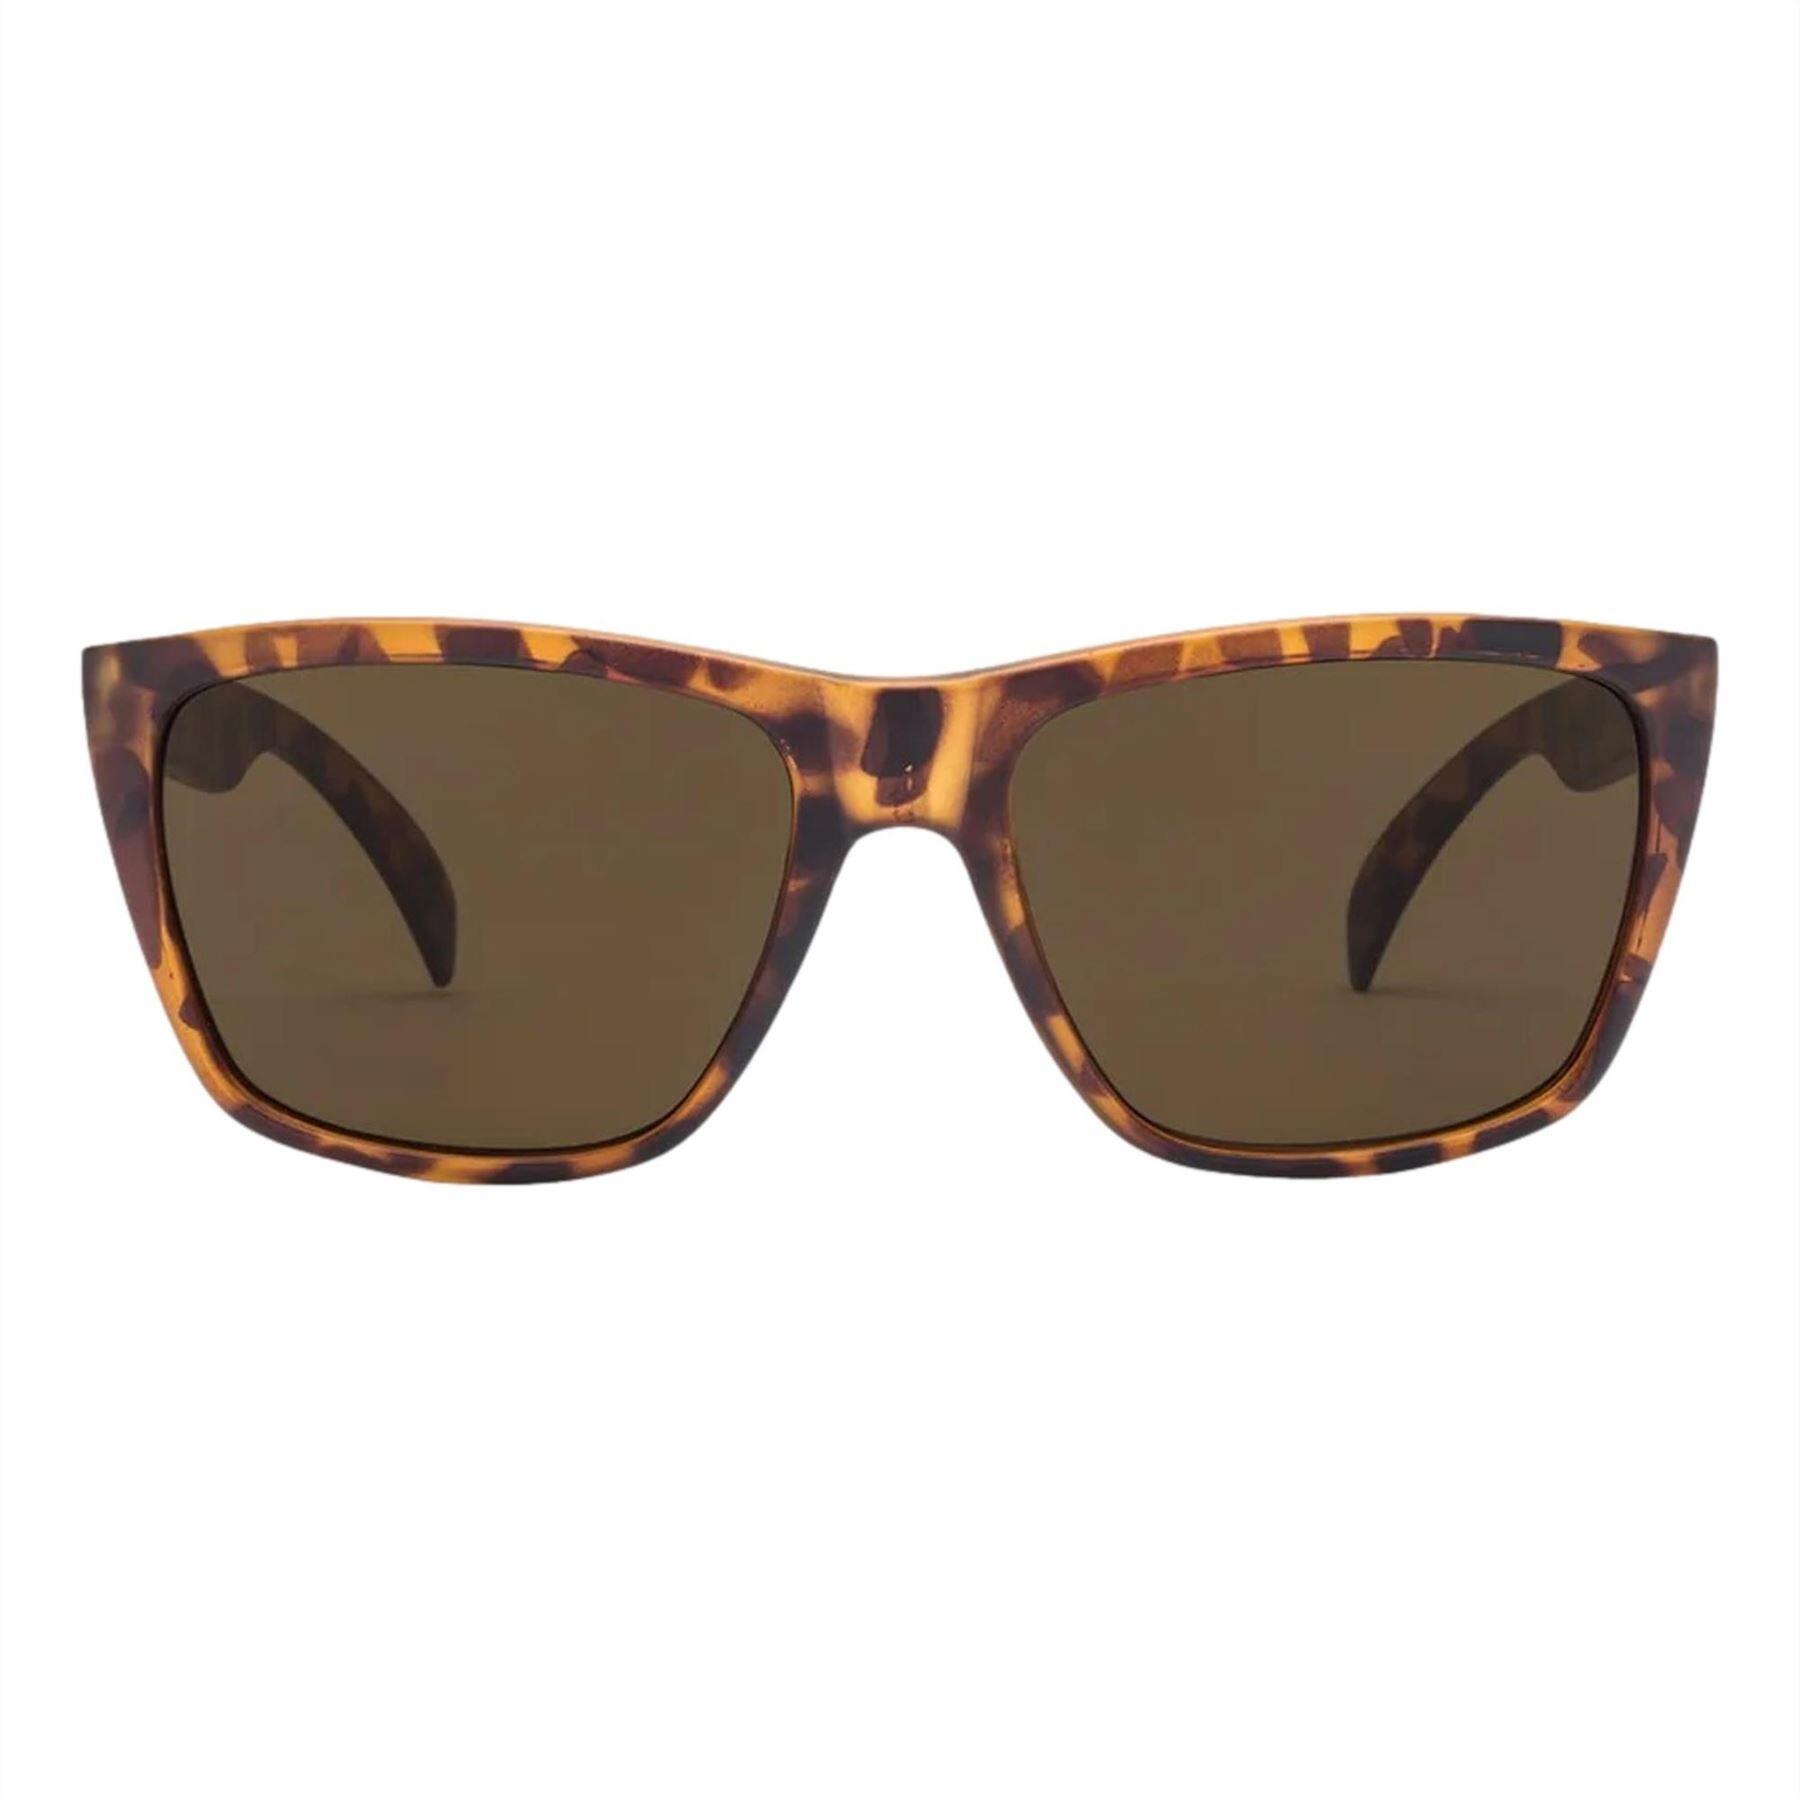 VOLCOM Volcom Plasm Sunglasses - Bronze